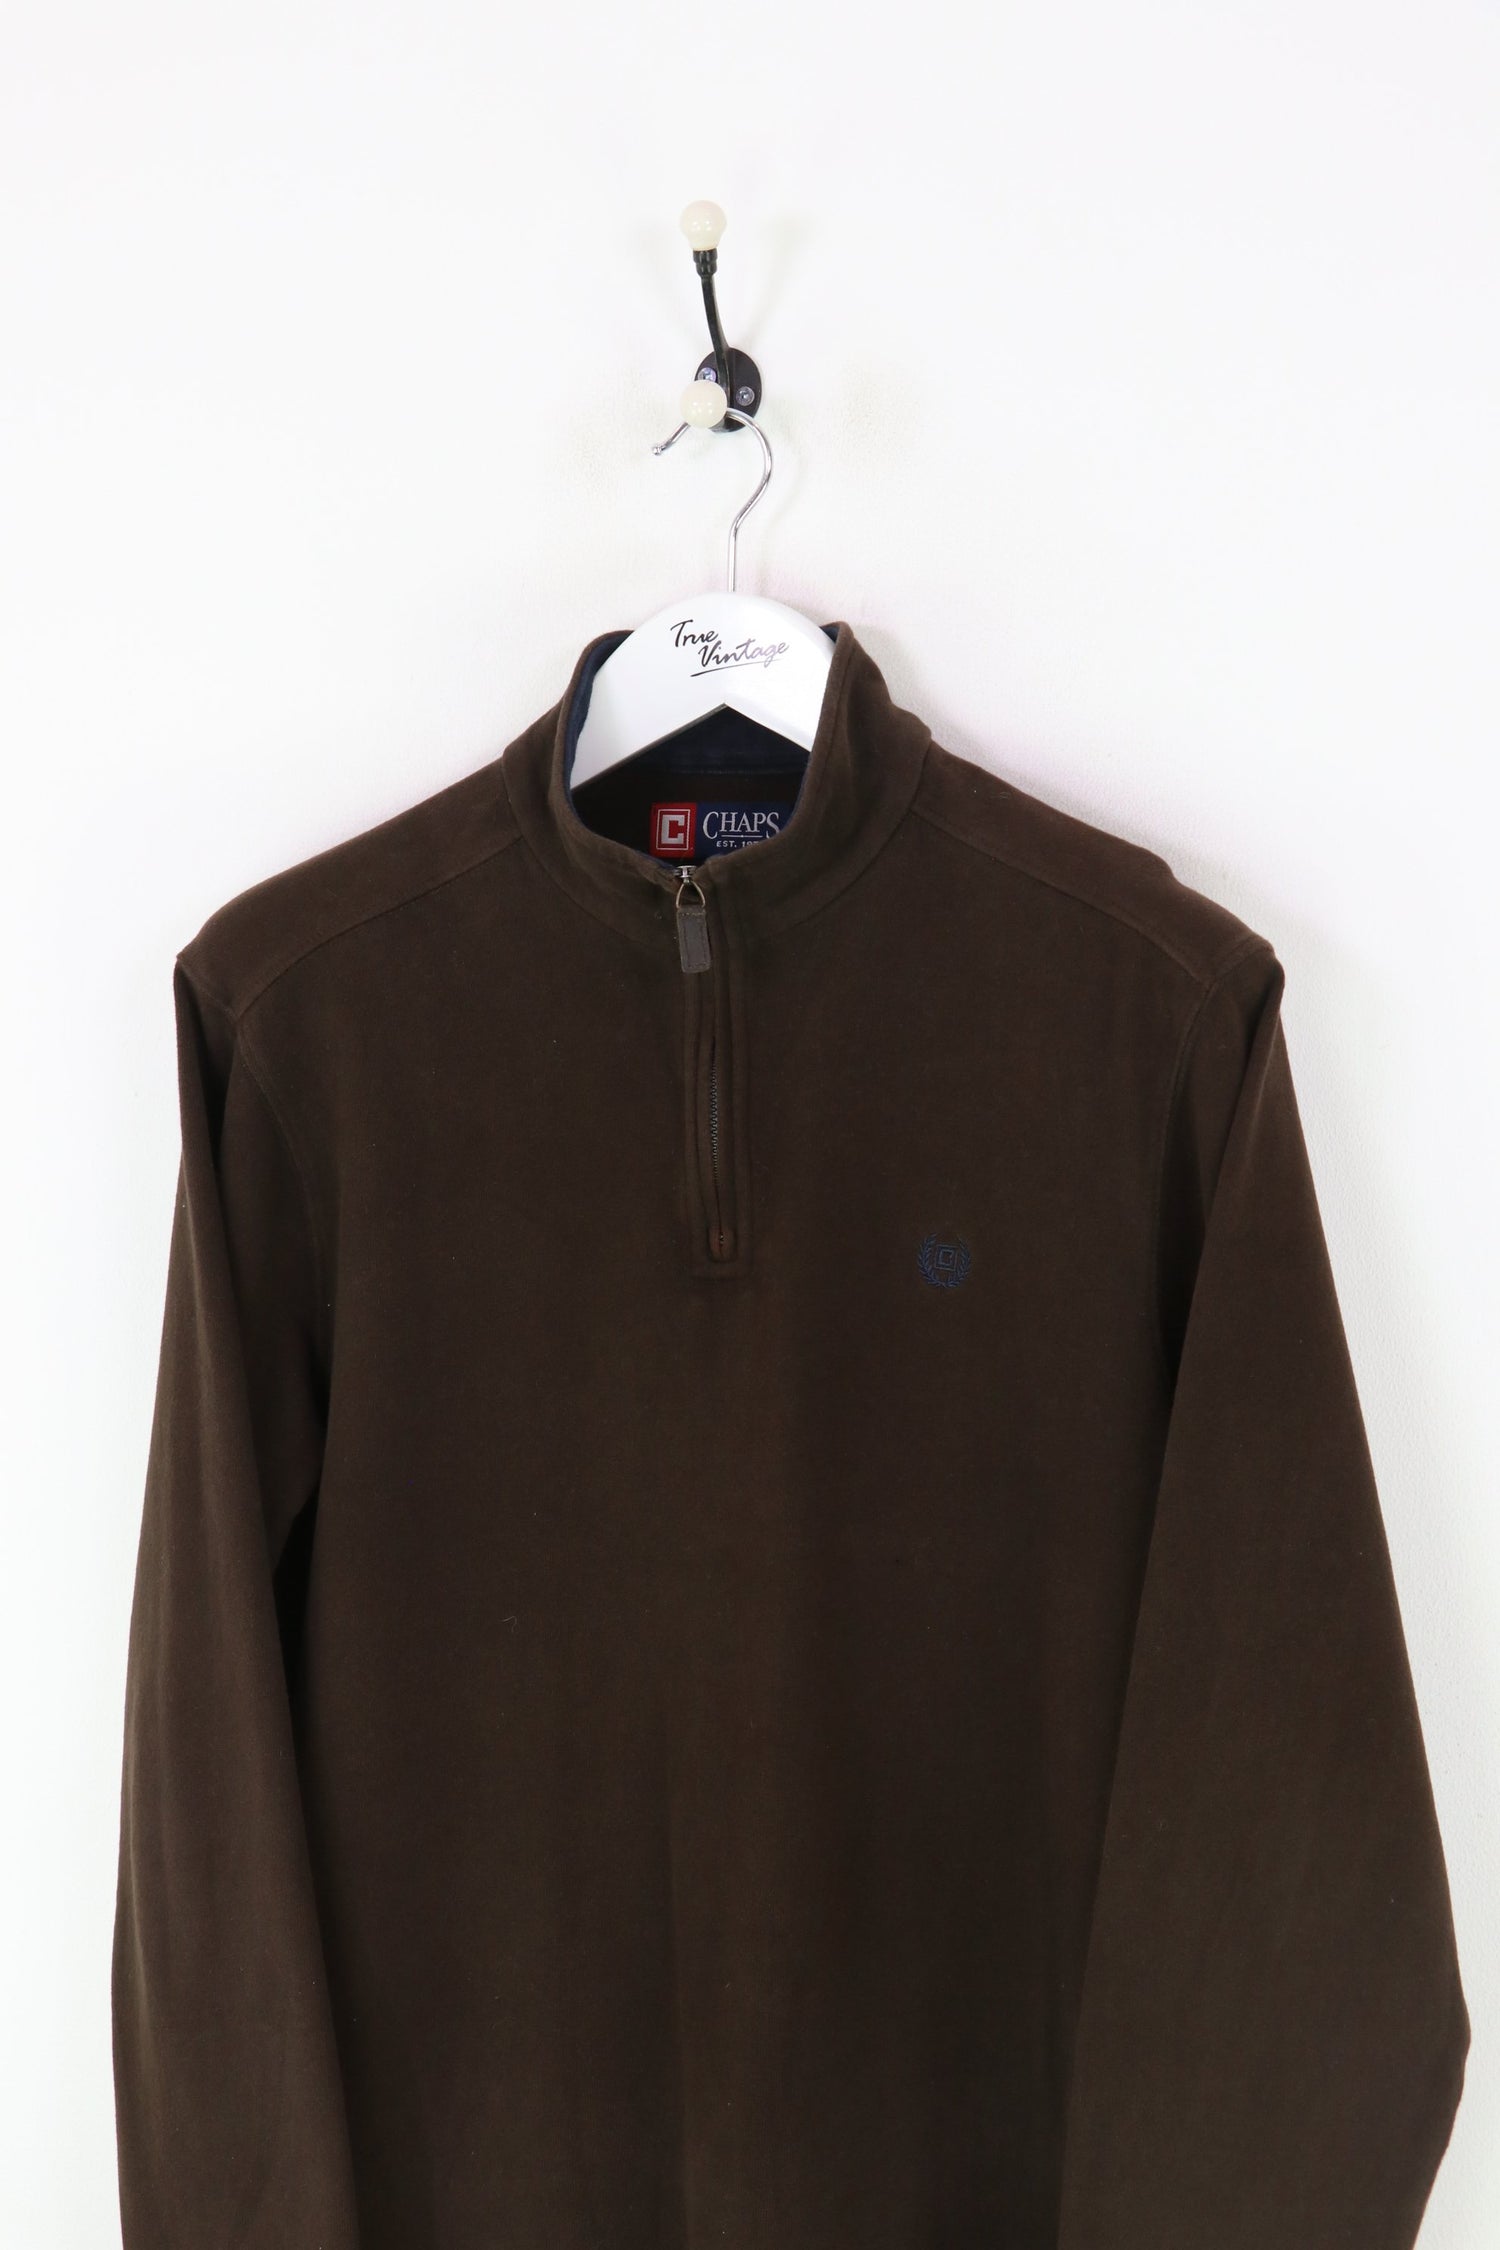 Ralph Lauren Chaps 1/4 Zip Sweatshirt Brown Large